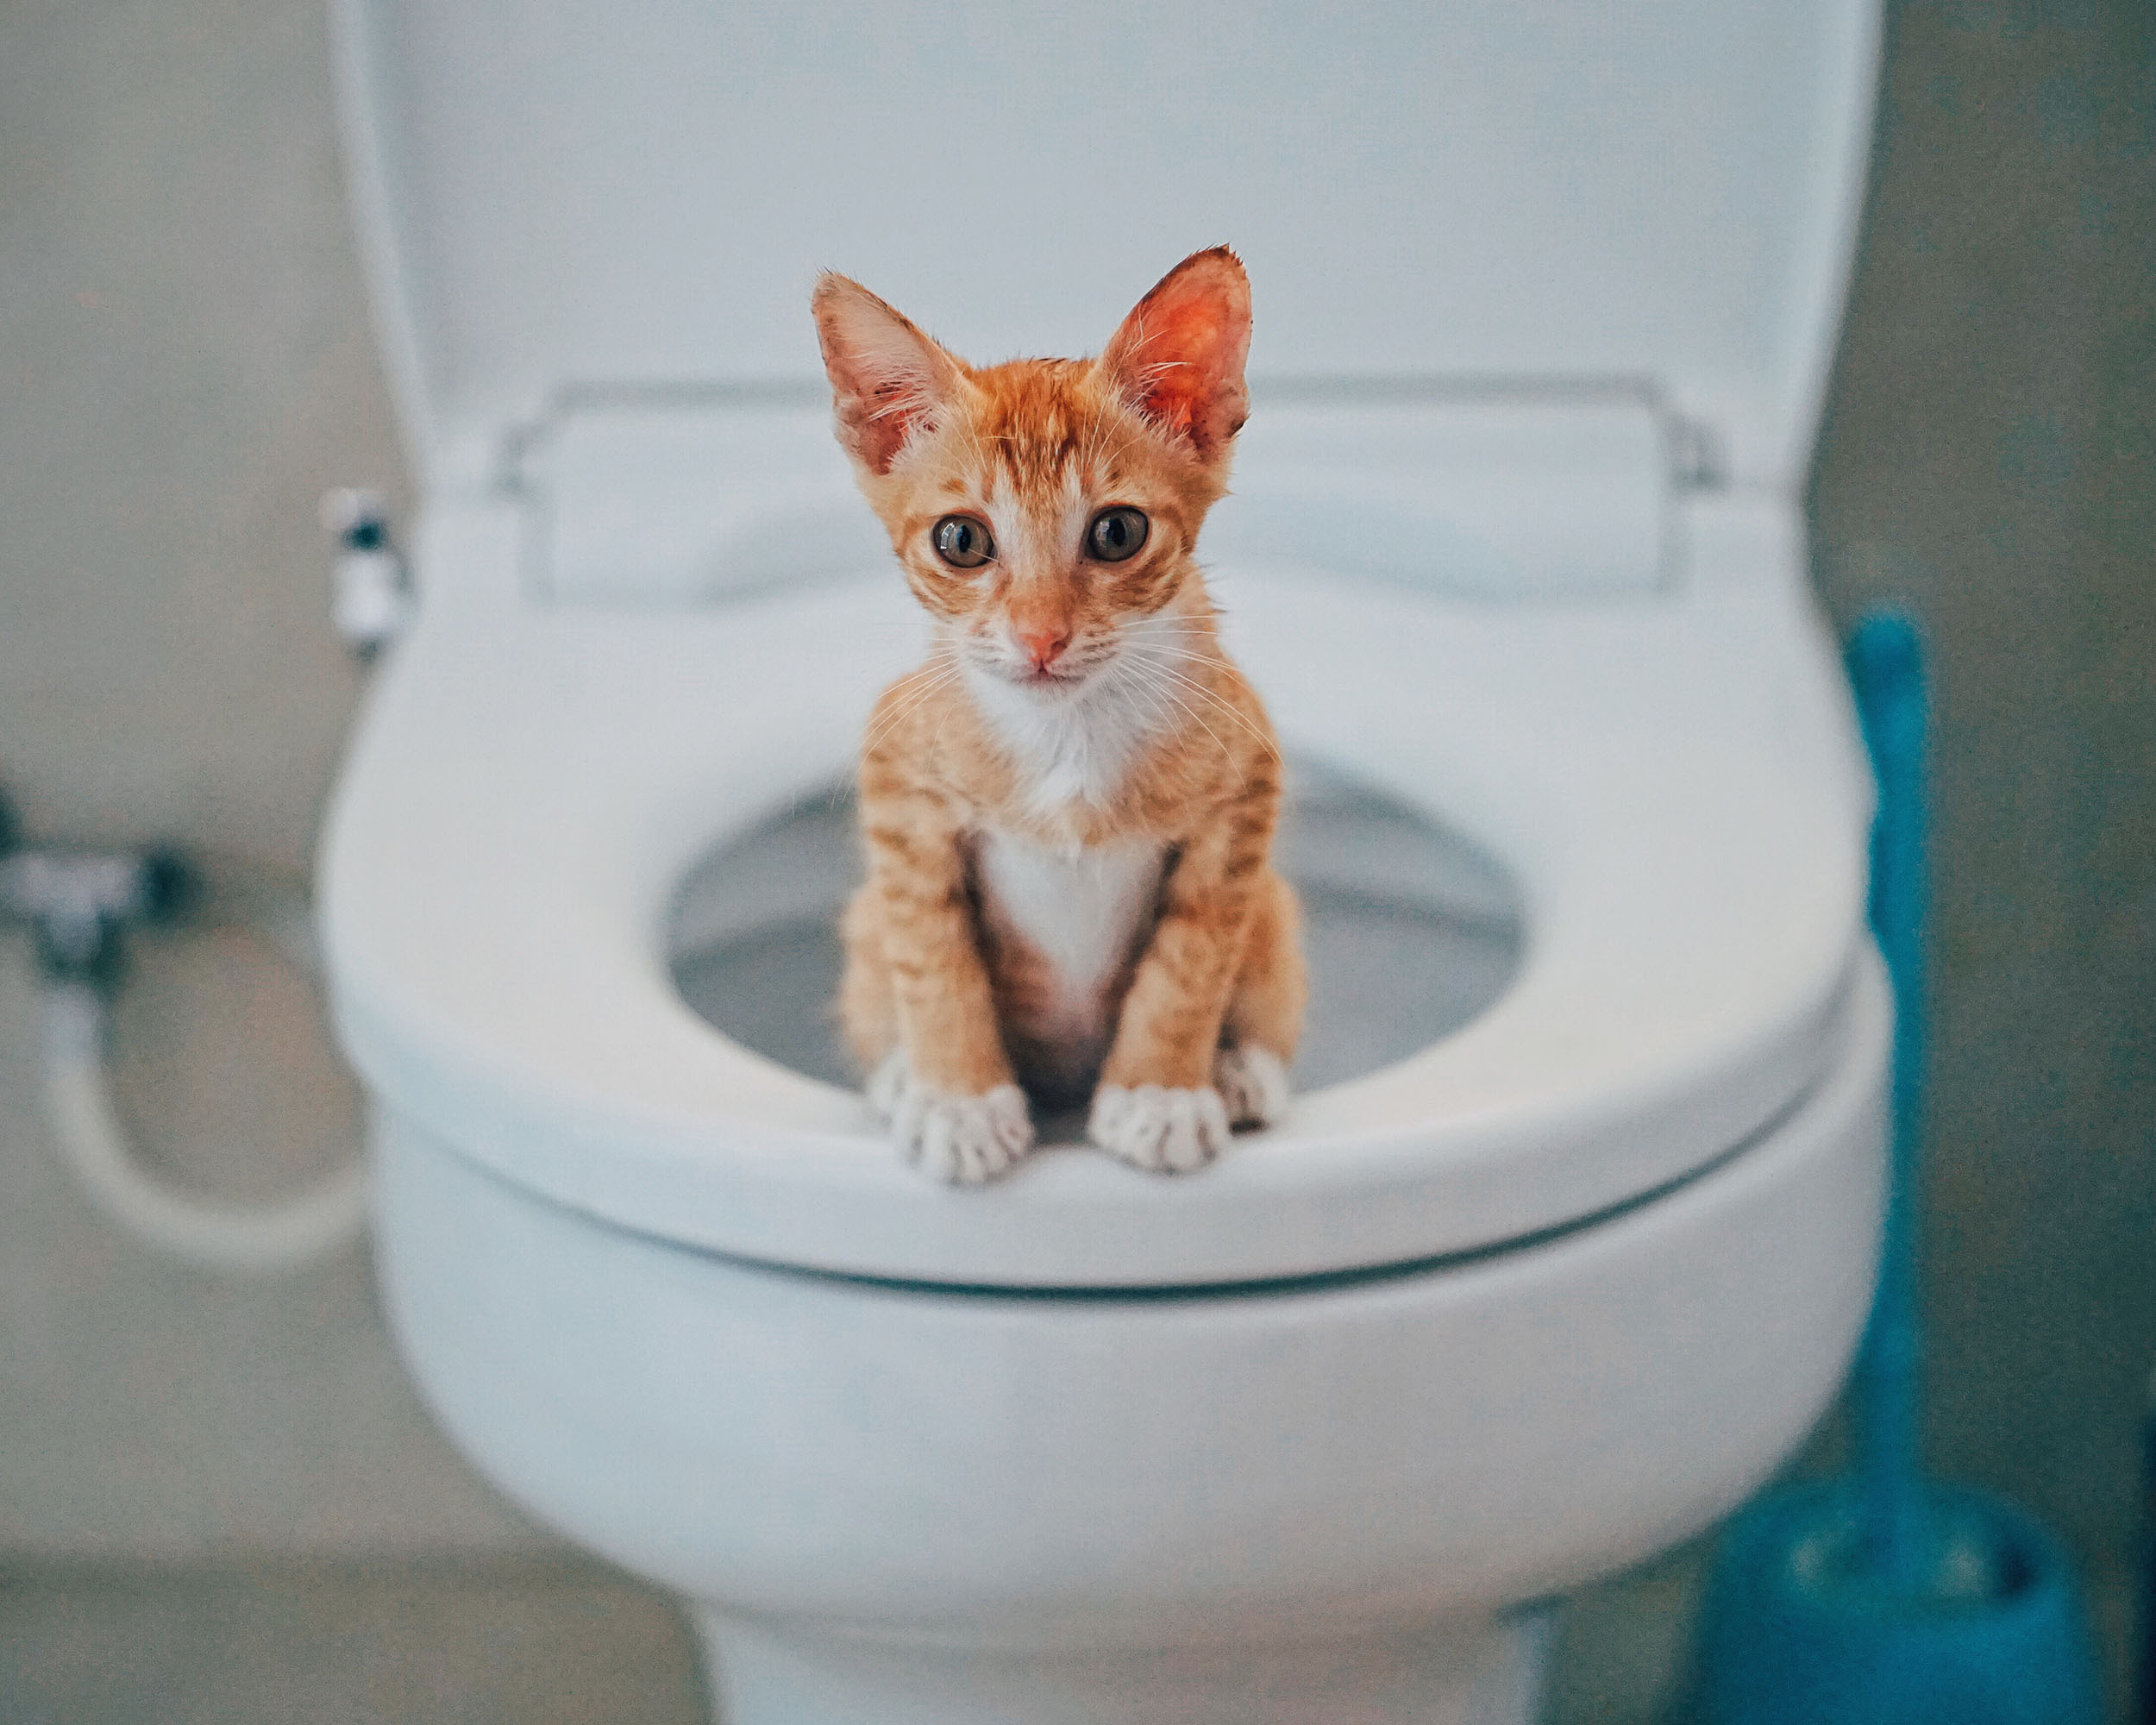 Cat toilet training